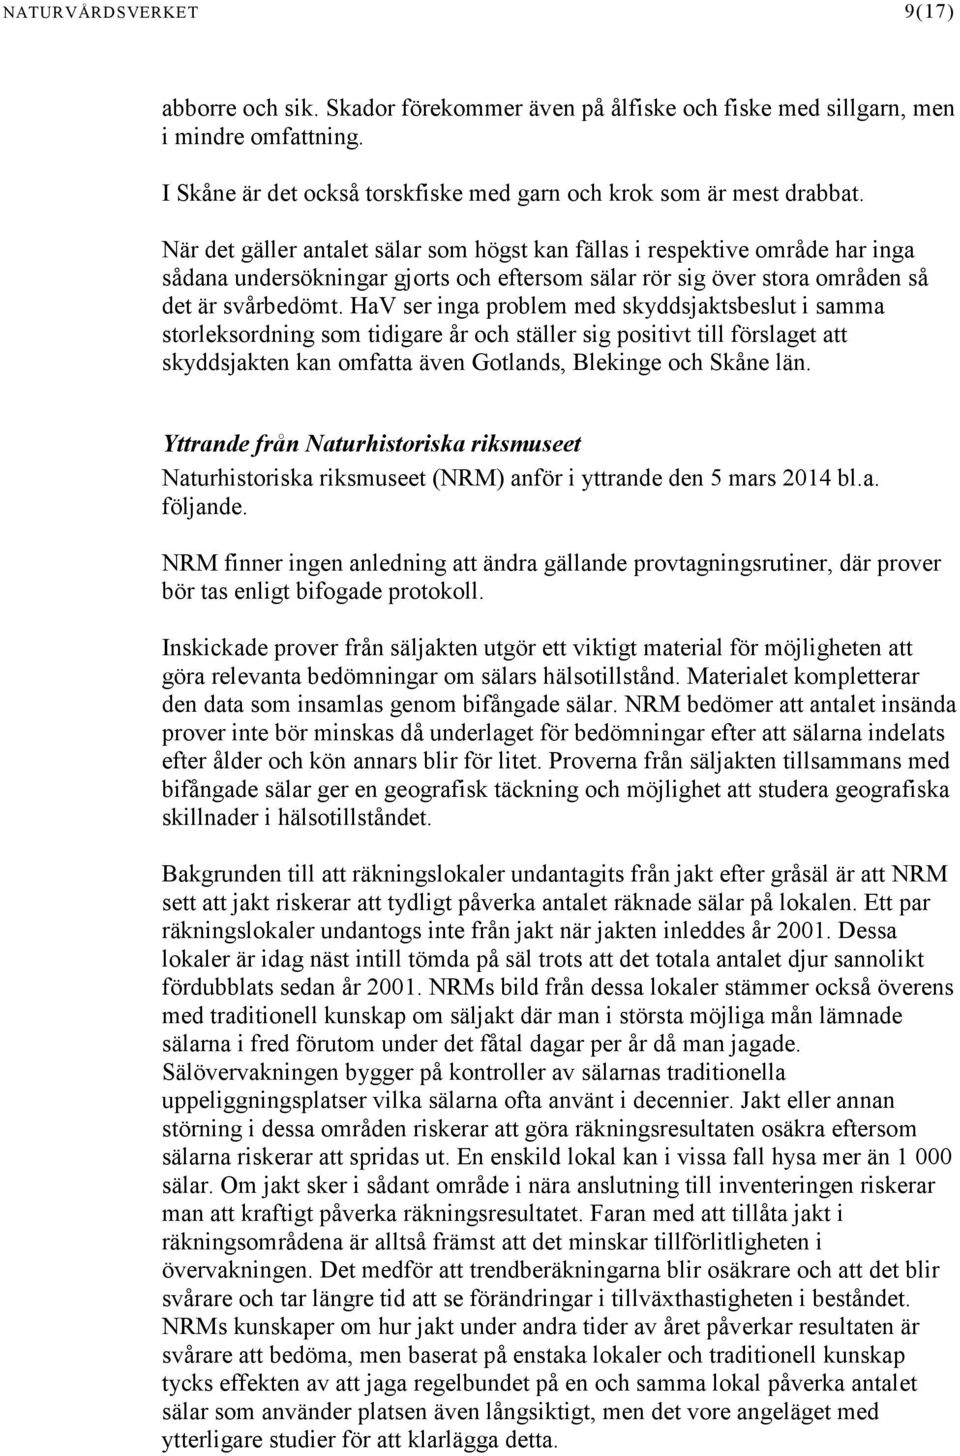 HaV ser inga problem med skyddsjaktsbeslut i samma storleksordning som tidigare år och ställer sig positivt till förslaget att skyddsjakten kan omfatta även Gotlands, Blekinge och Skåne län.